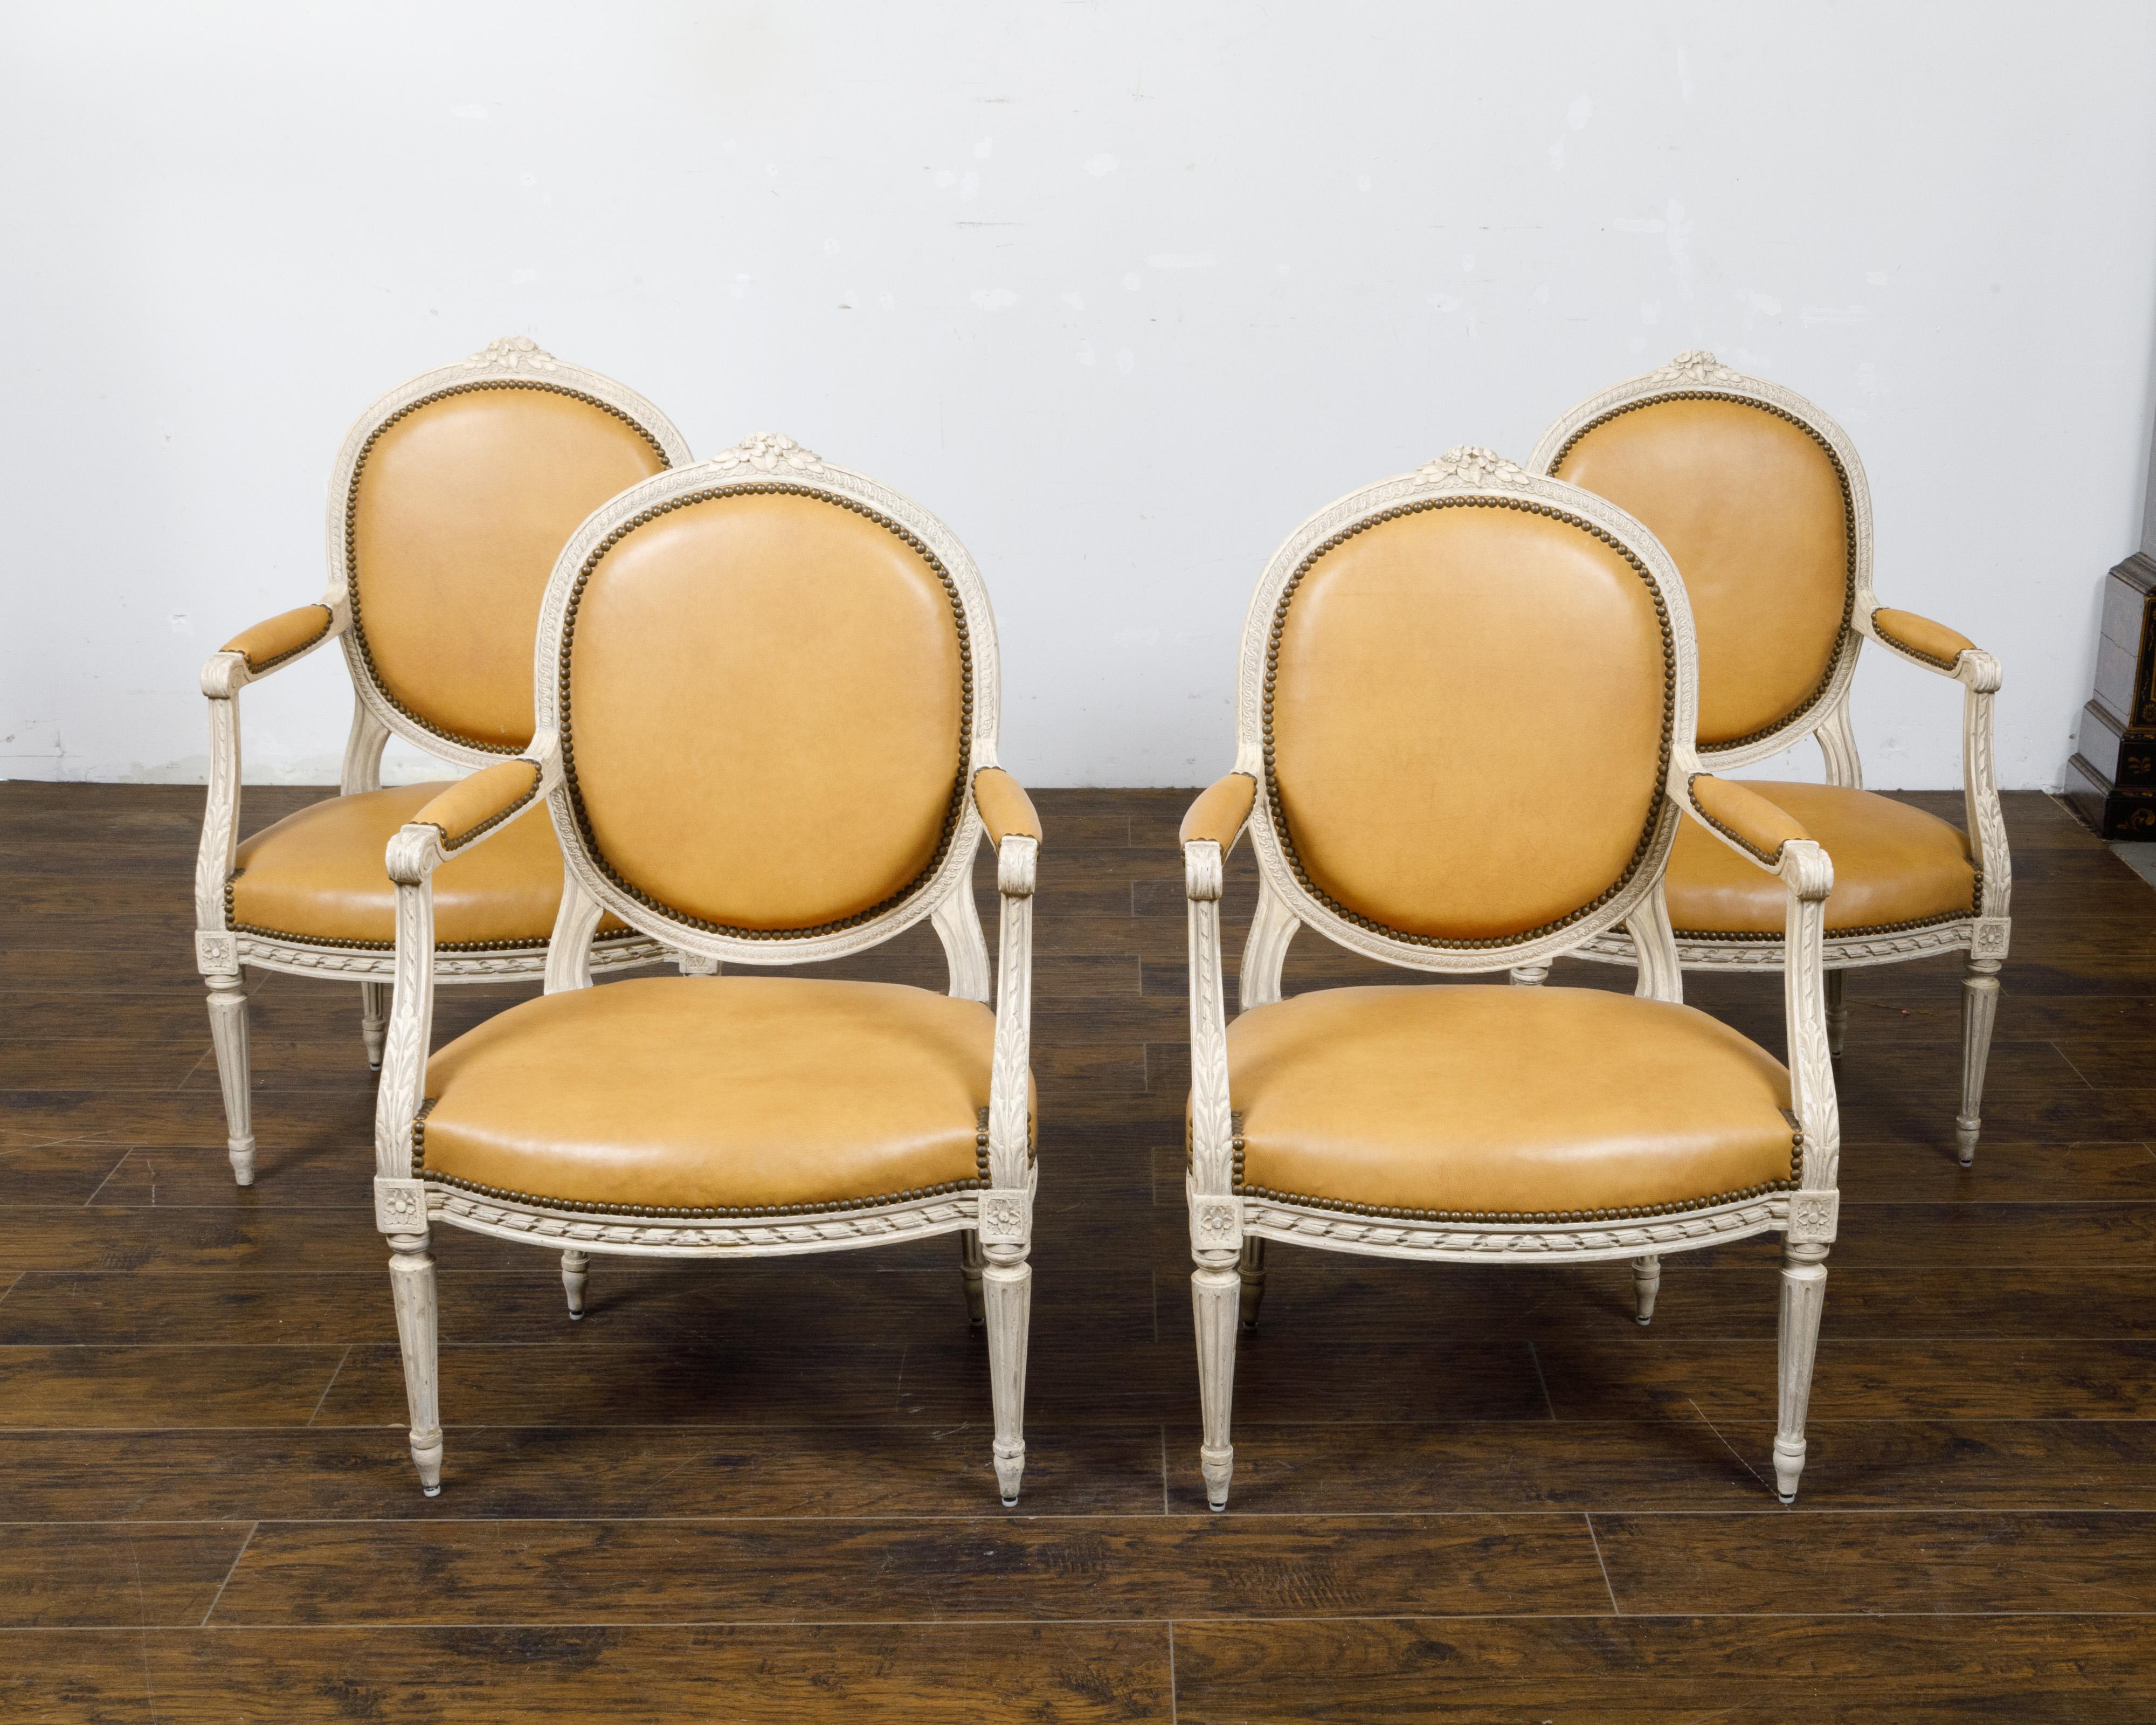 Ein Satz von vier französischen Louis XVI-Stil off-white gemalt ovale Rückenlehne Sessel von circa 1900 mit geschnitzten Dekor. Dieses Set aus vier französischen Sesseln im Louis-XVI-Stil aus der Zeit um 1900 zeichnet sich durch eine elegante,